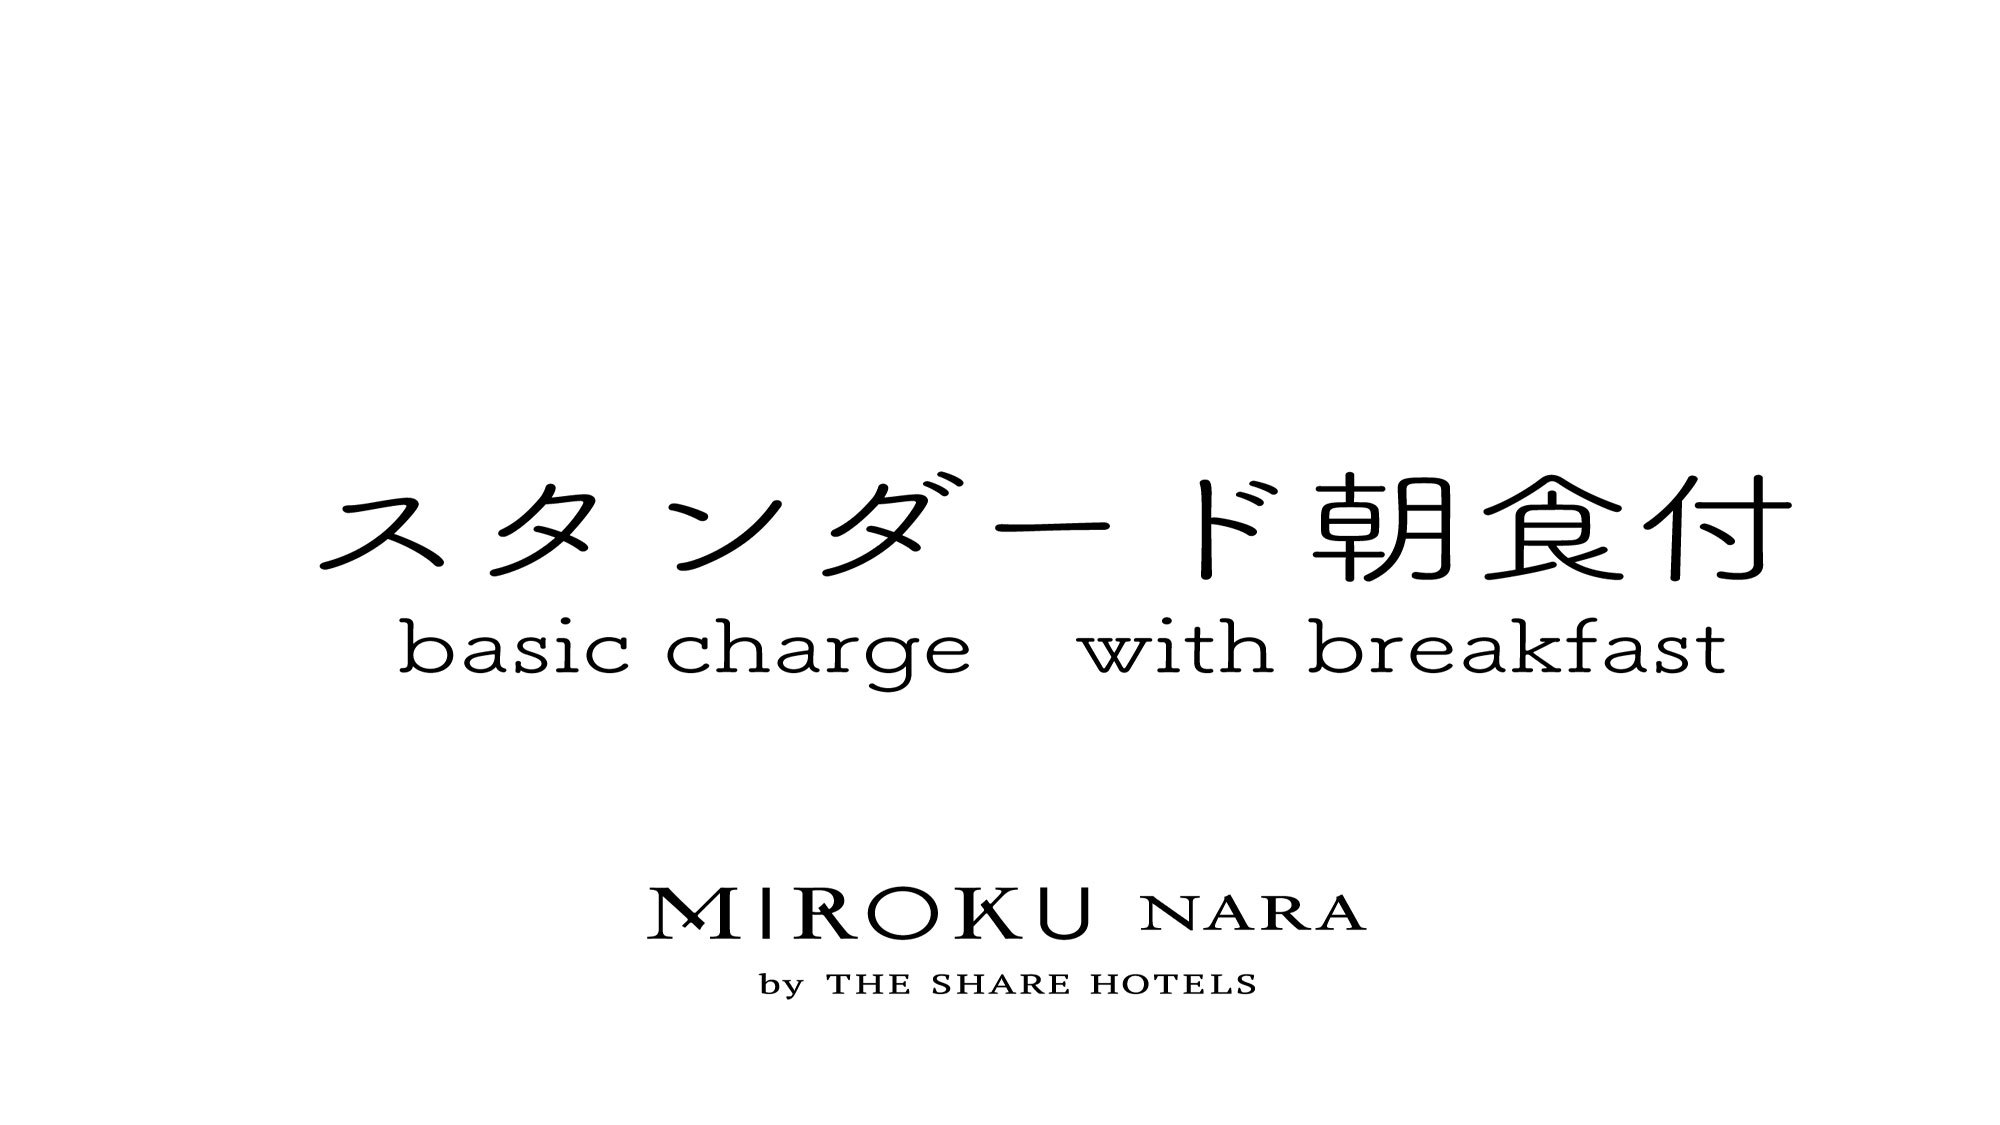 【食でめぐる奈良】【基本】MIROKU奈良 スタンダードプラン - 和食プレート朝食付き